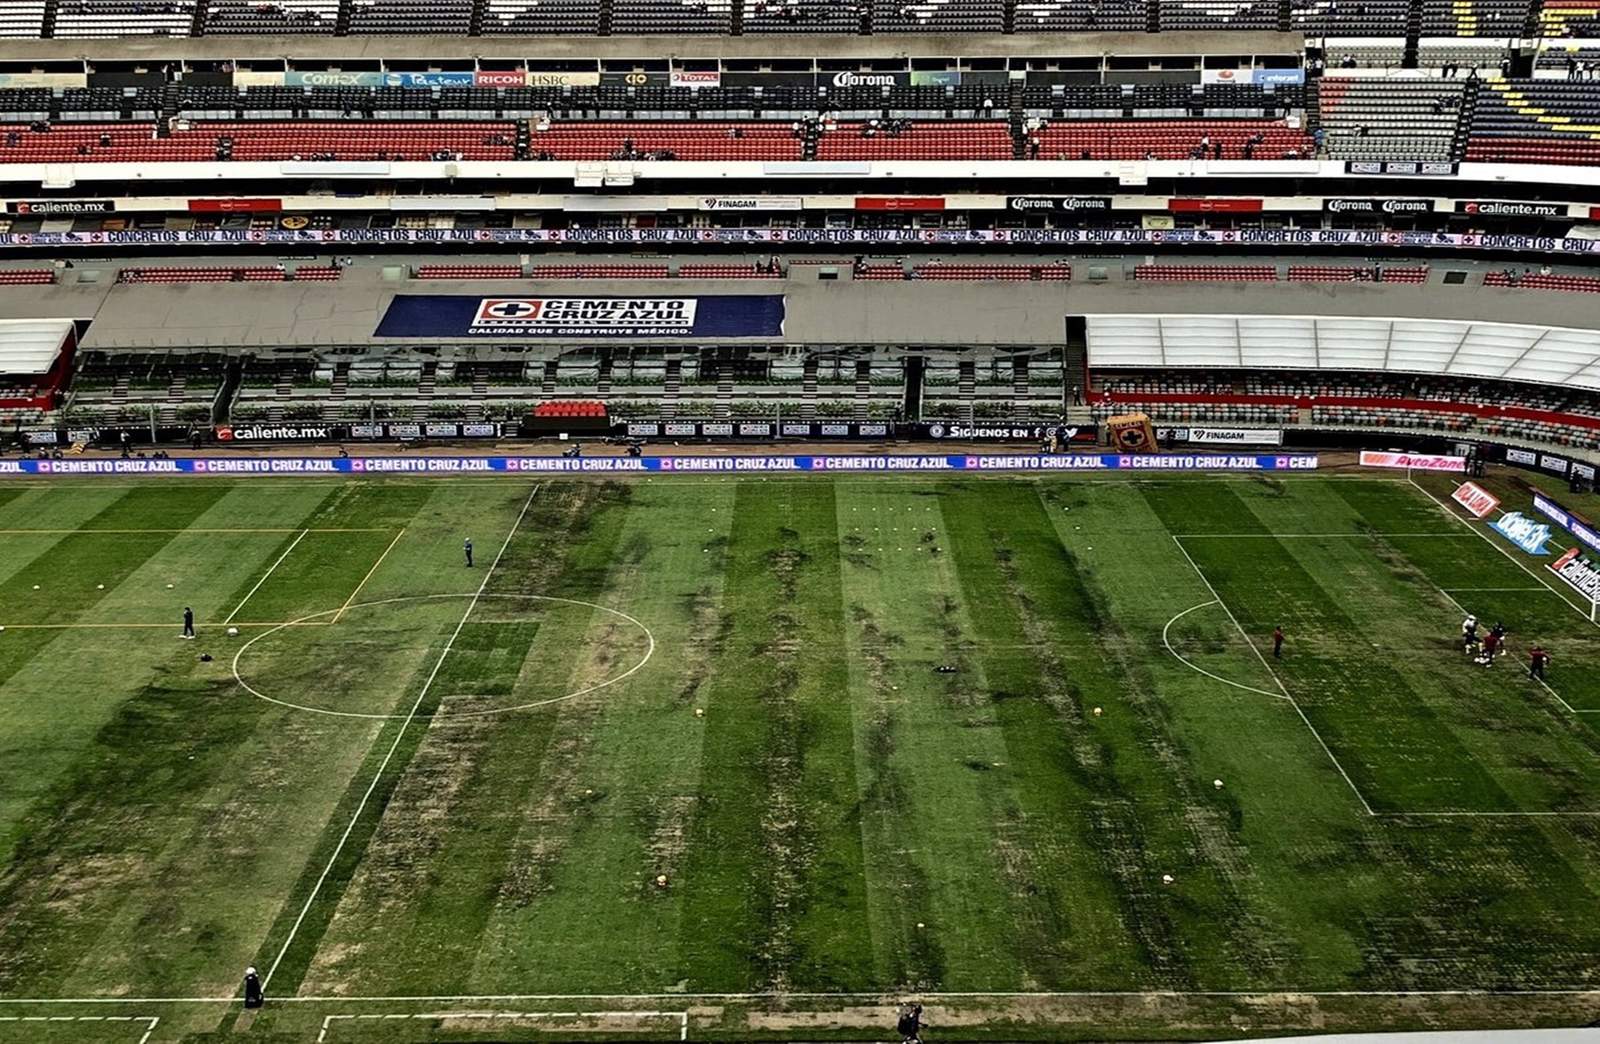 La cancha del Estadio Azteca luce bastante deteriorada previo al partido de la NFL entre Rams y Chiefs. (Especial)